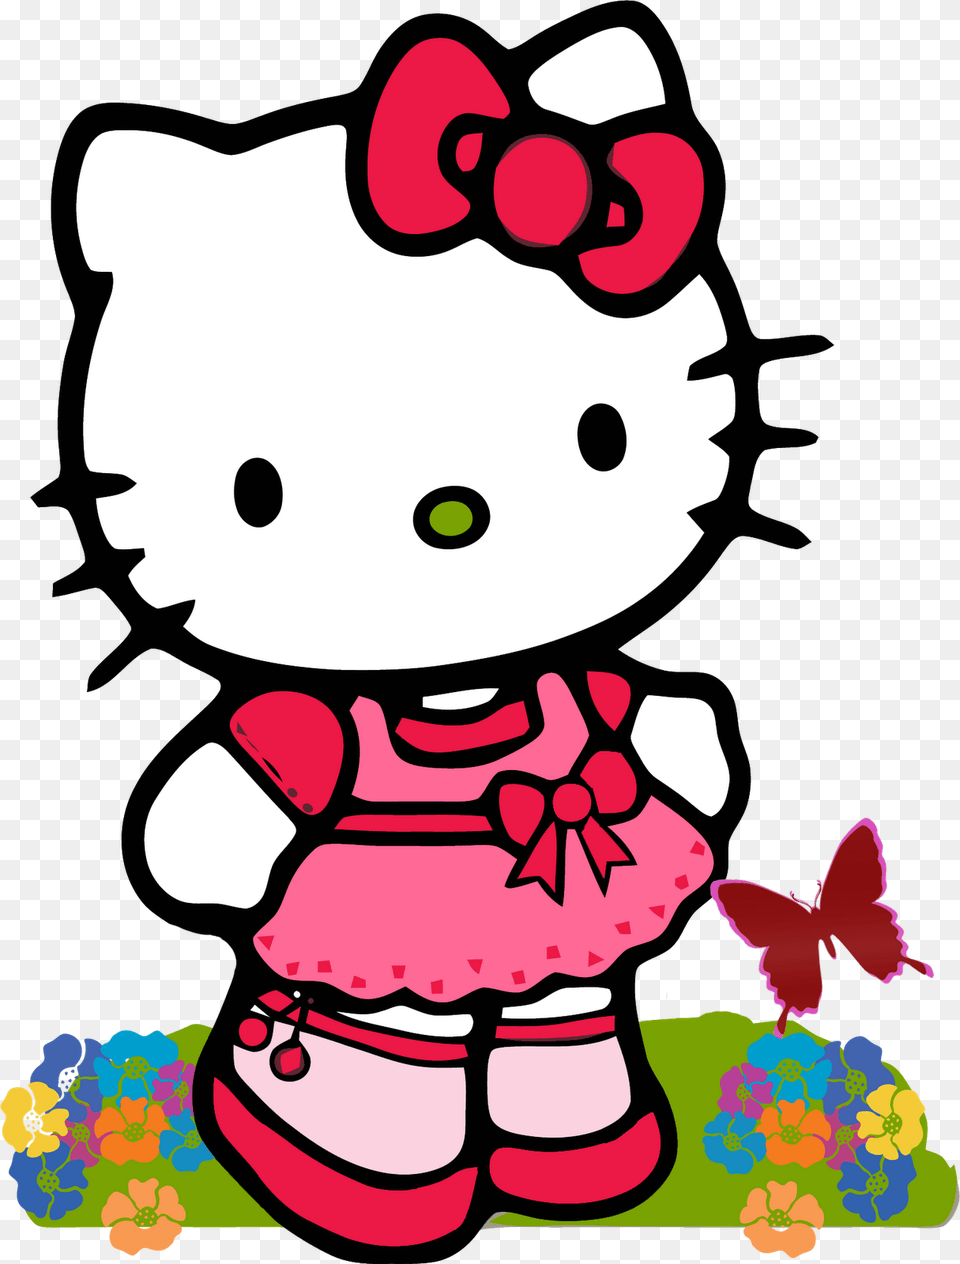 Hello Kitty Amigas Alguien Quien Me Comparta Imagenes De Hello, Baby, Person, Plush, Toy Png